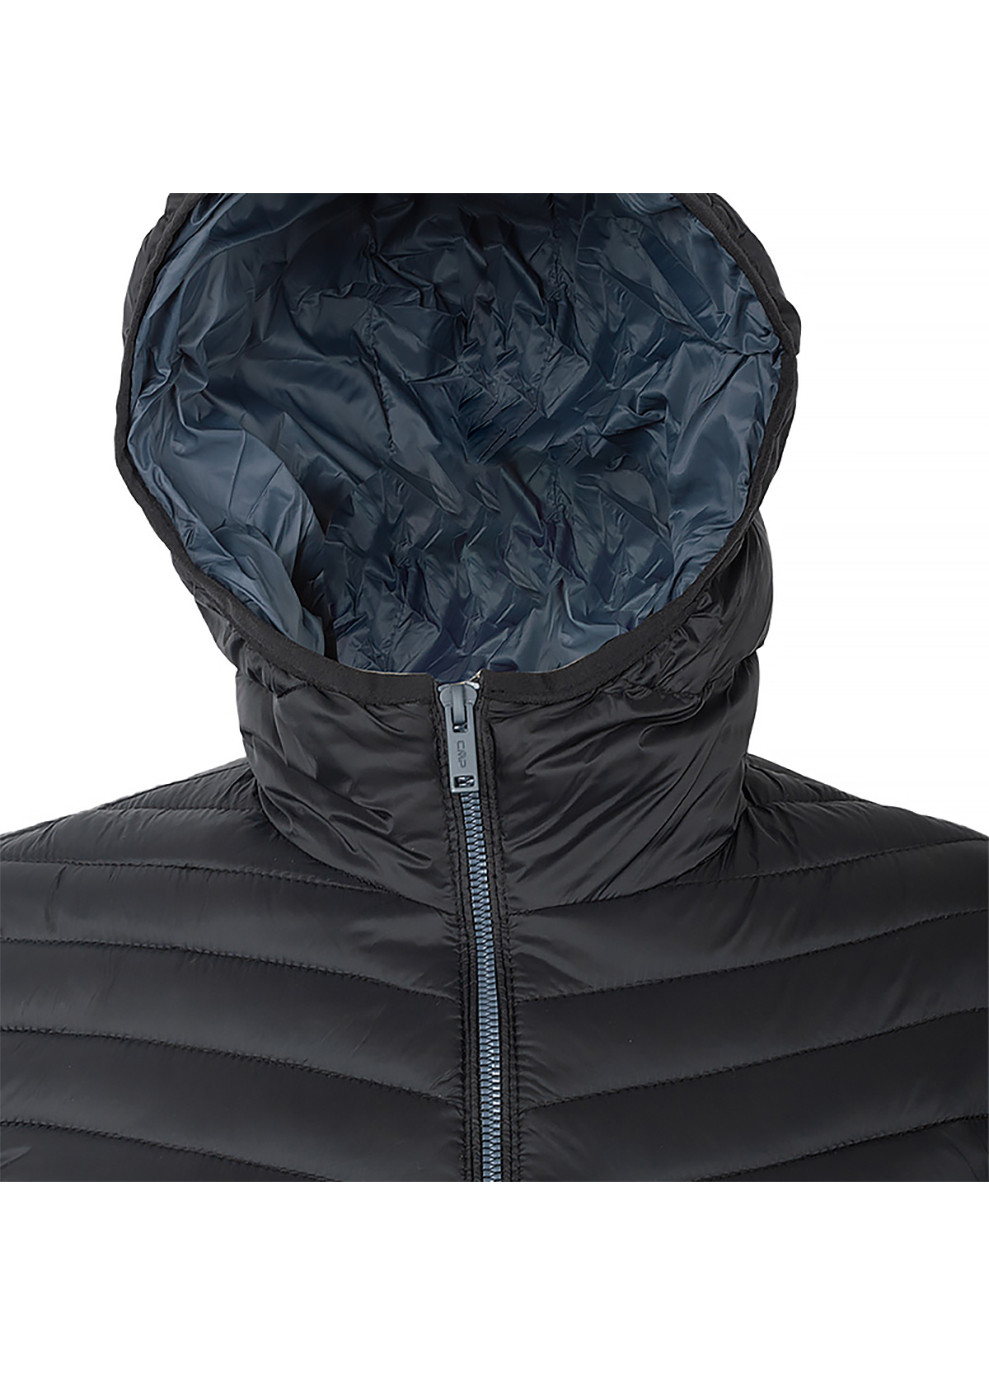 Черная зимняя женская куртка jacket fix hood черный CMP